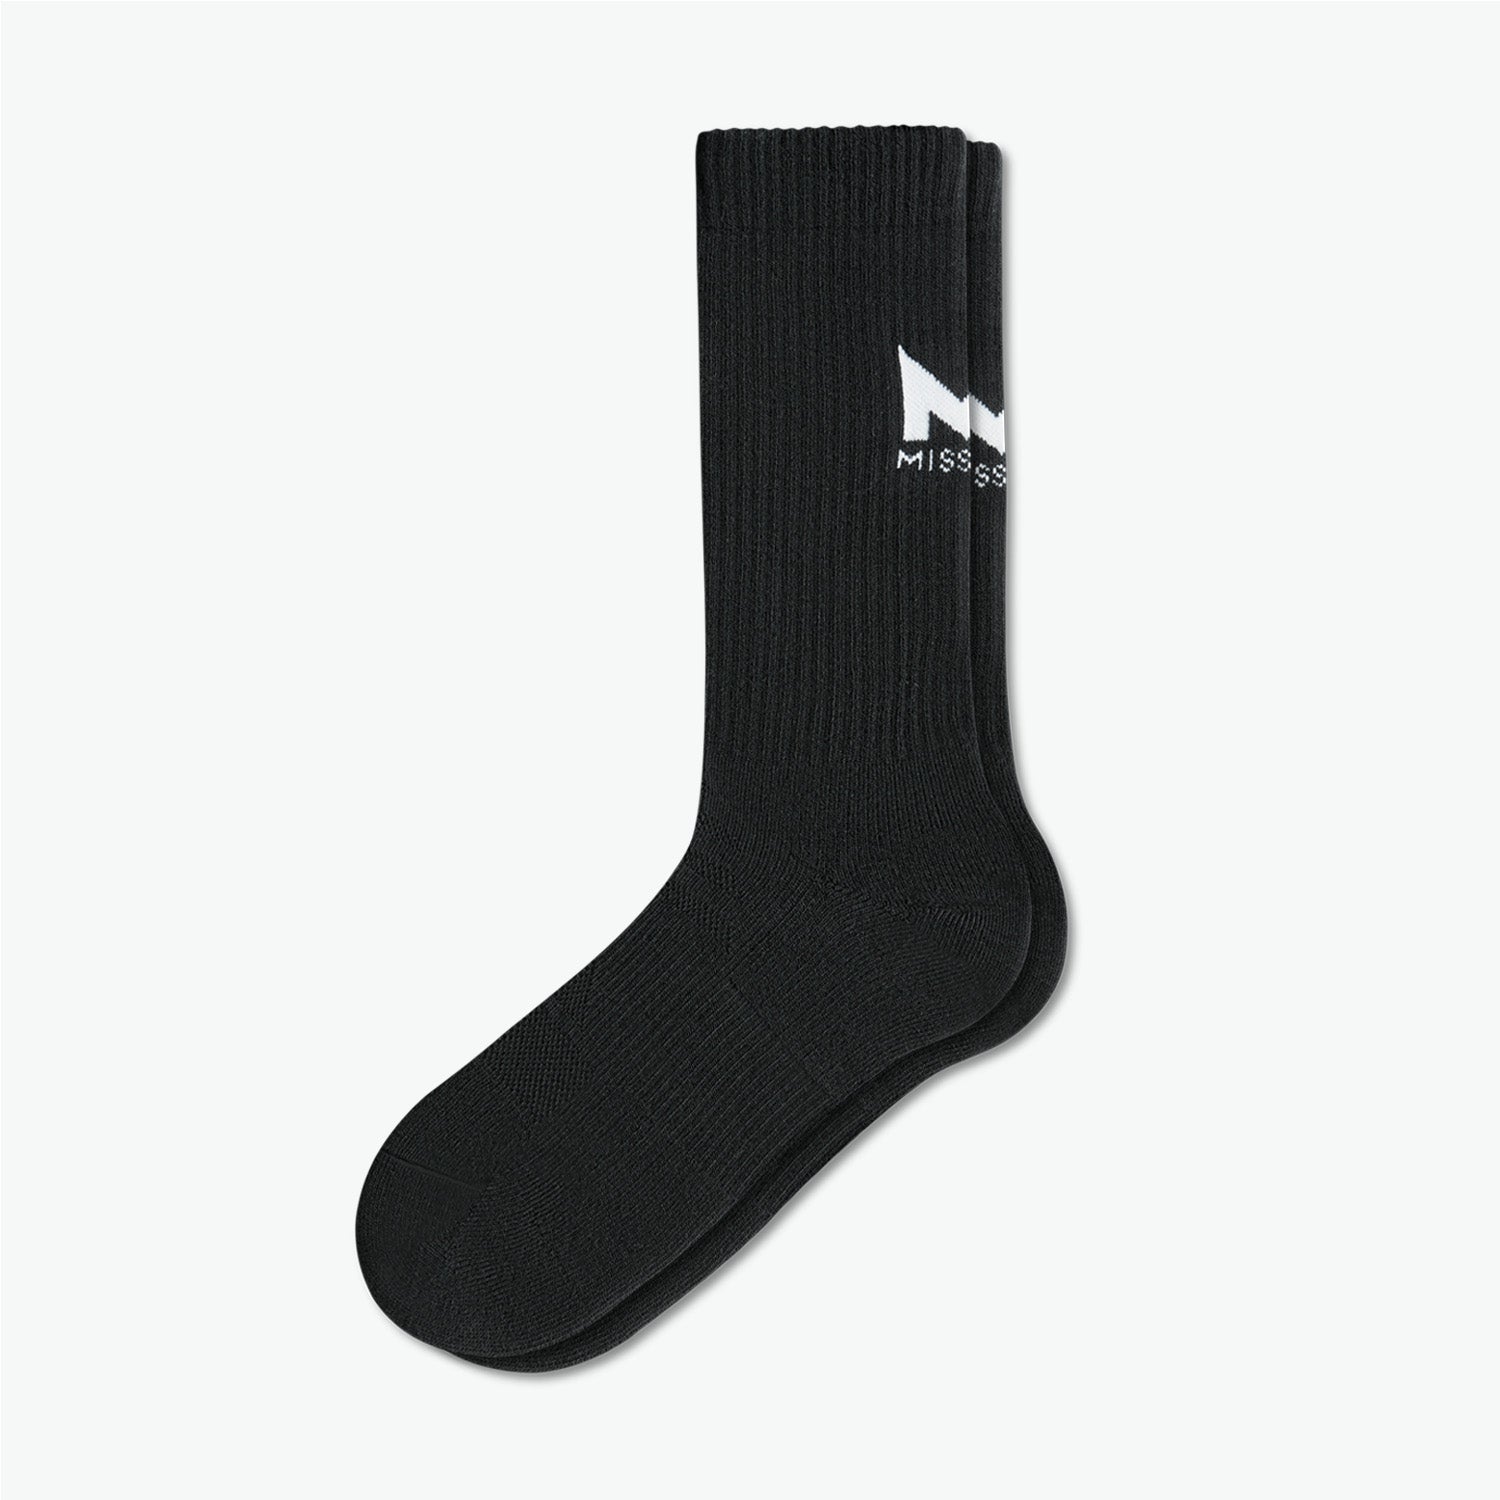 Pinnacle Dry Comfort Crew Socks Socks MISSION M  (US 6-8) Black 